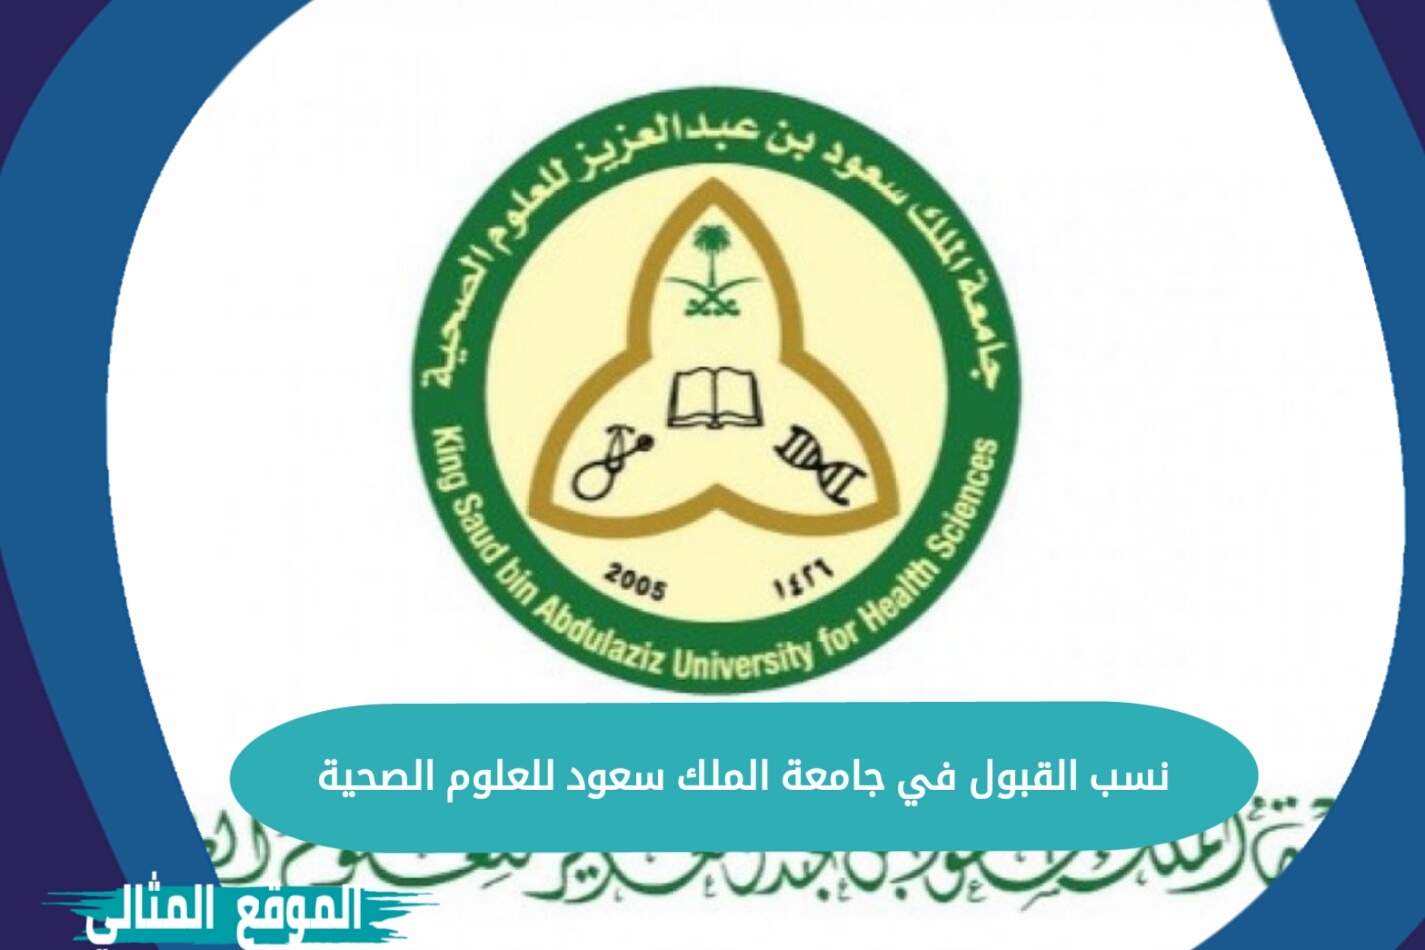 تخصصات جامعة الملك سعود الاحساء